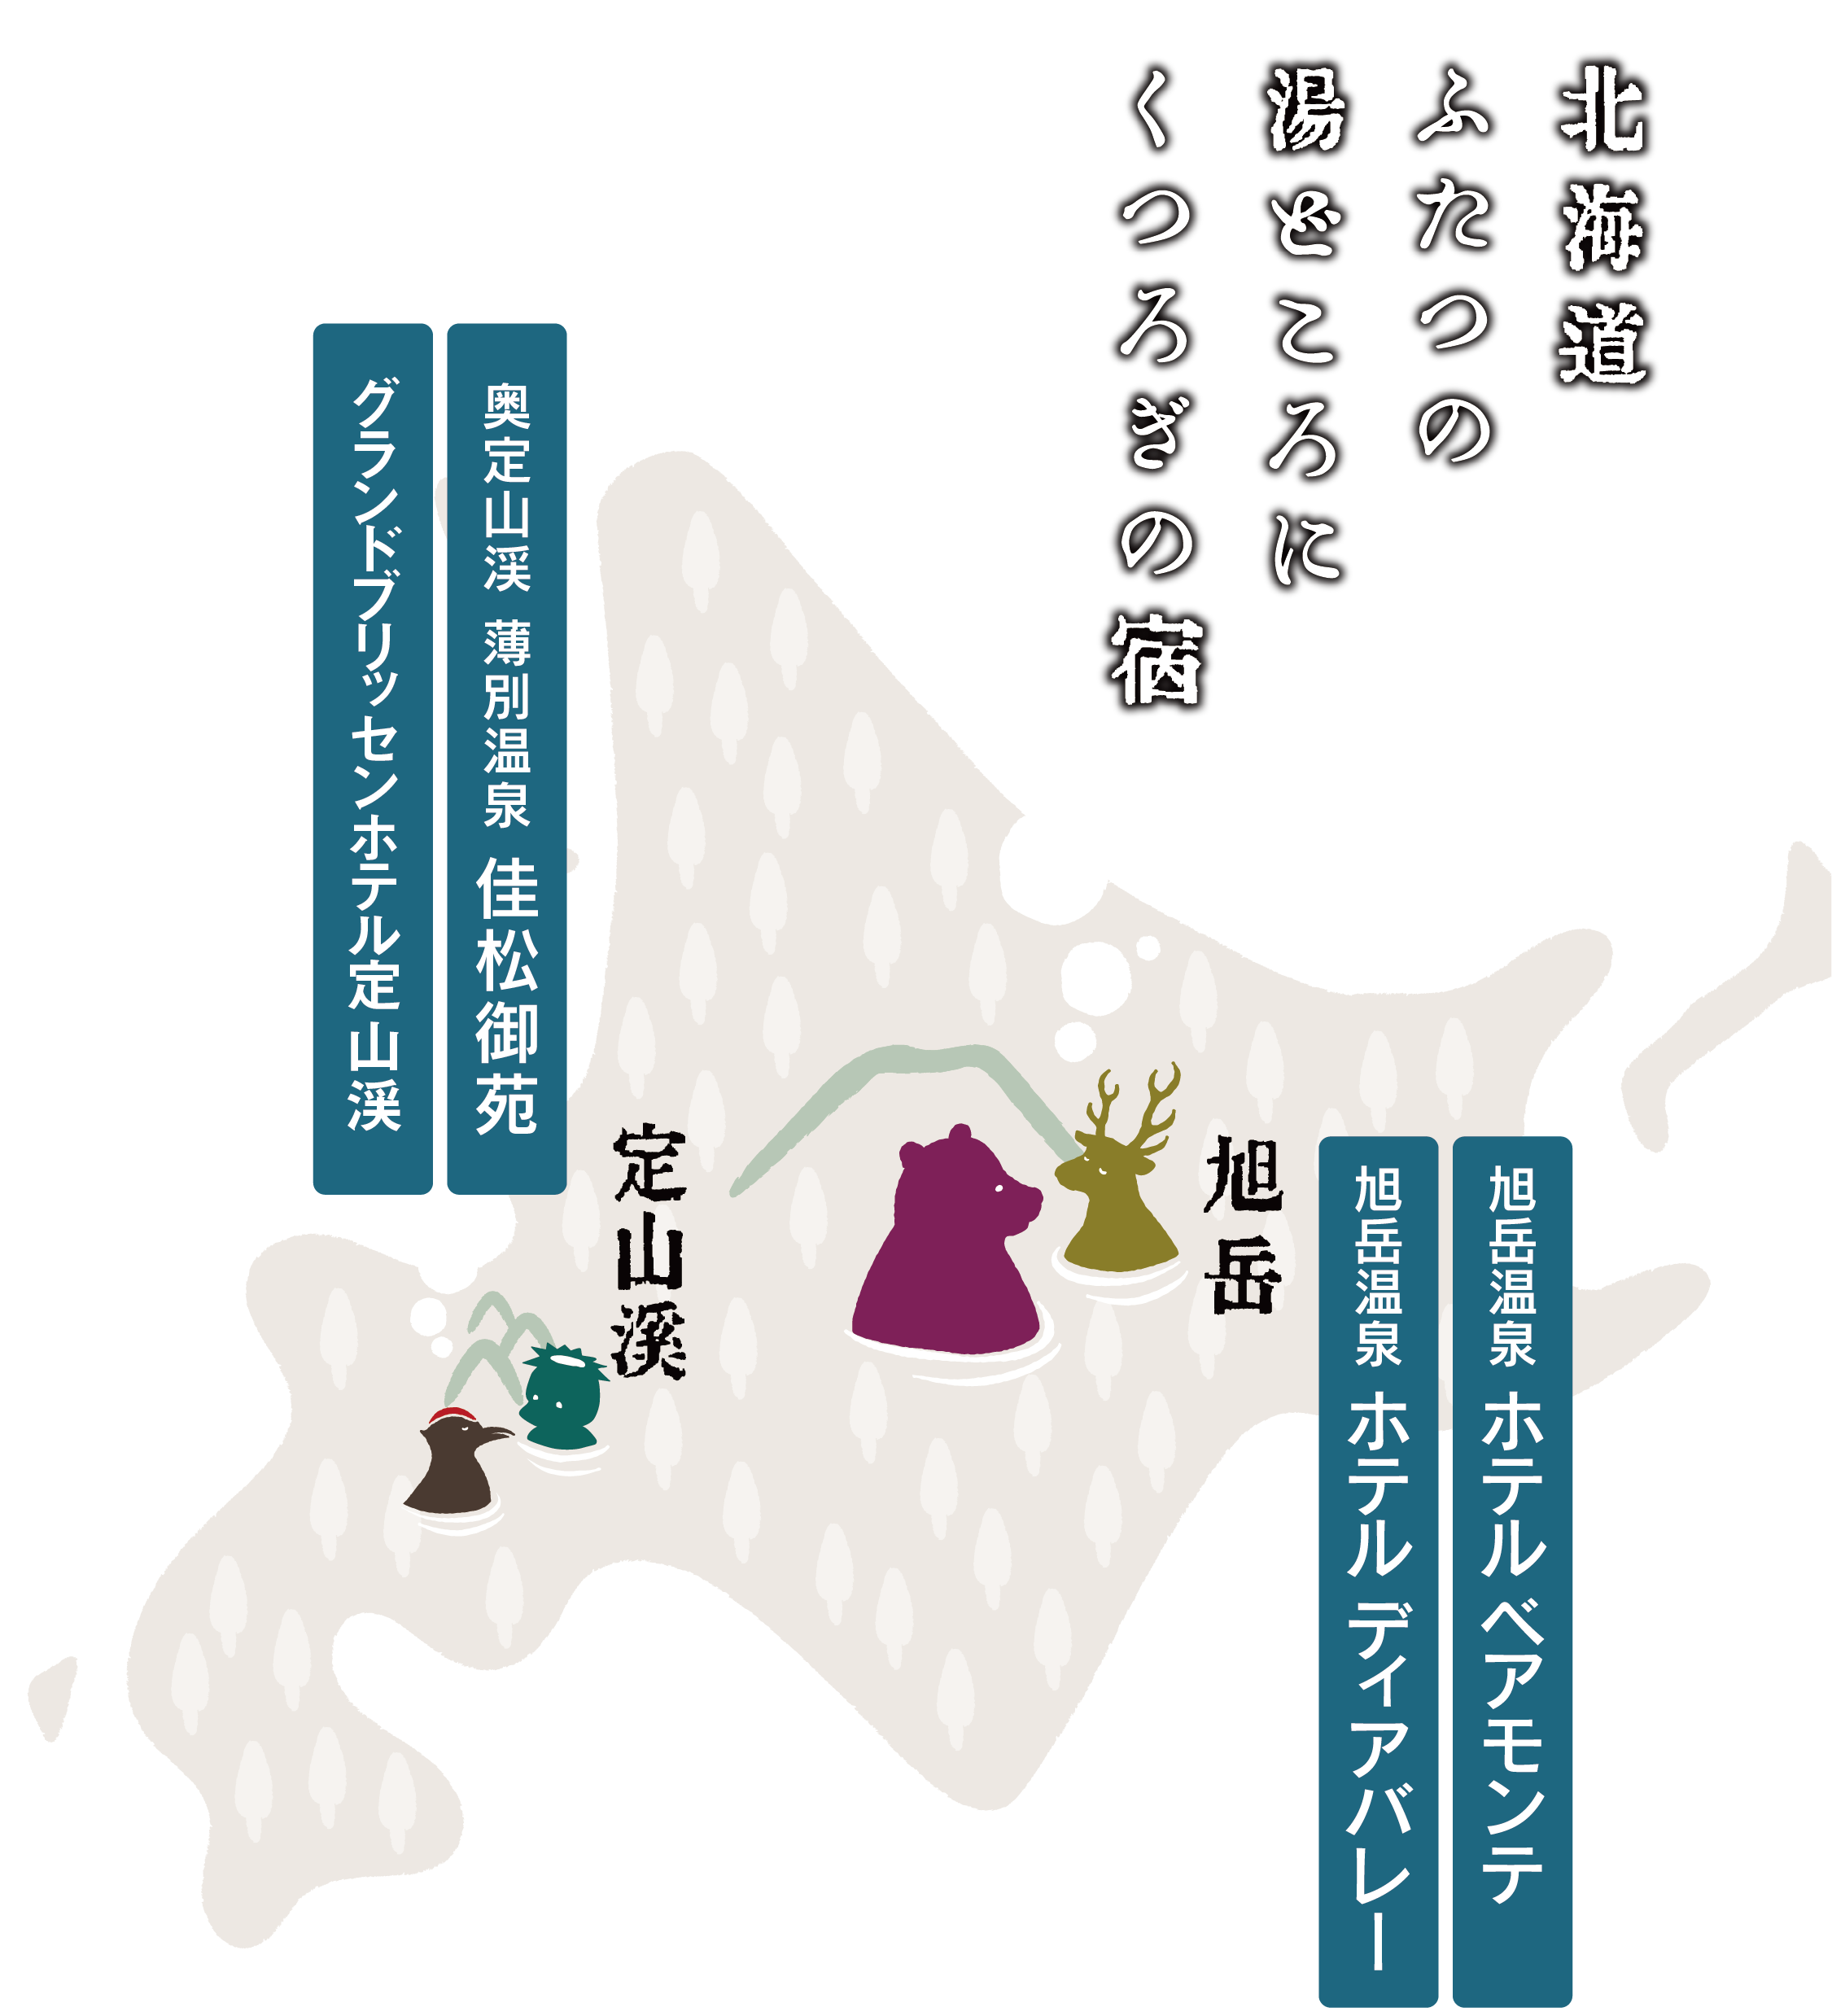 北海道ふたつの湯どころにくつろぎの宿。定山渓「佳松御苑」「新ホテル開業予定」。旭岳「ベアモンテ」「ディアバレー」